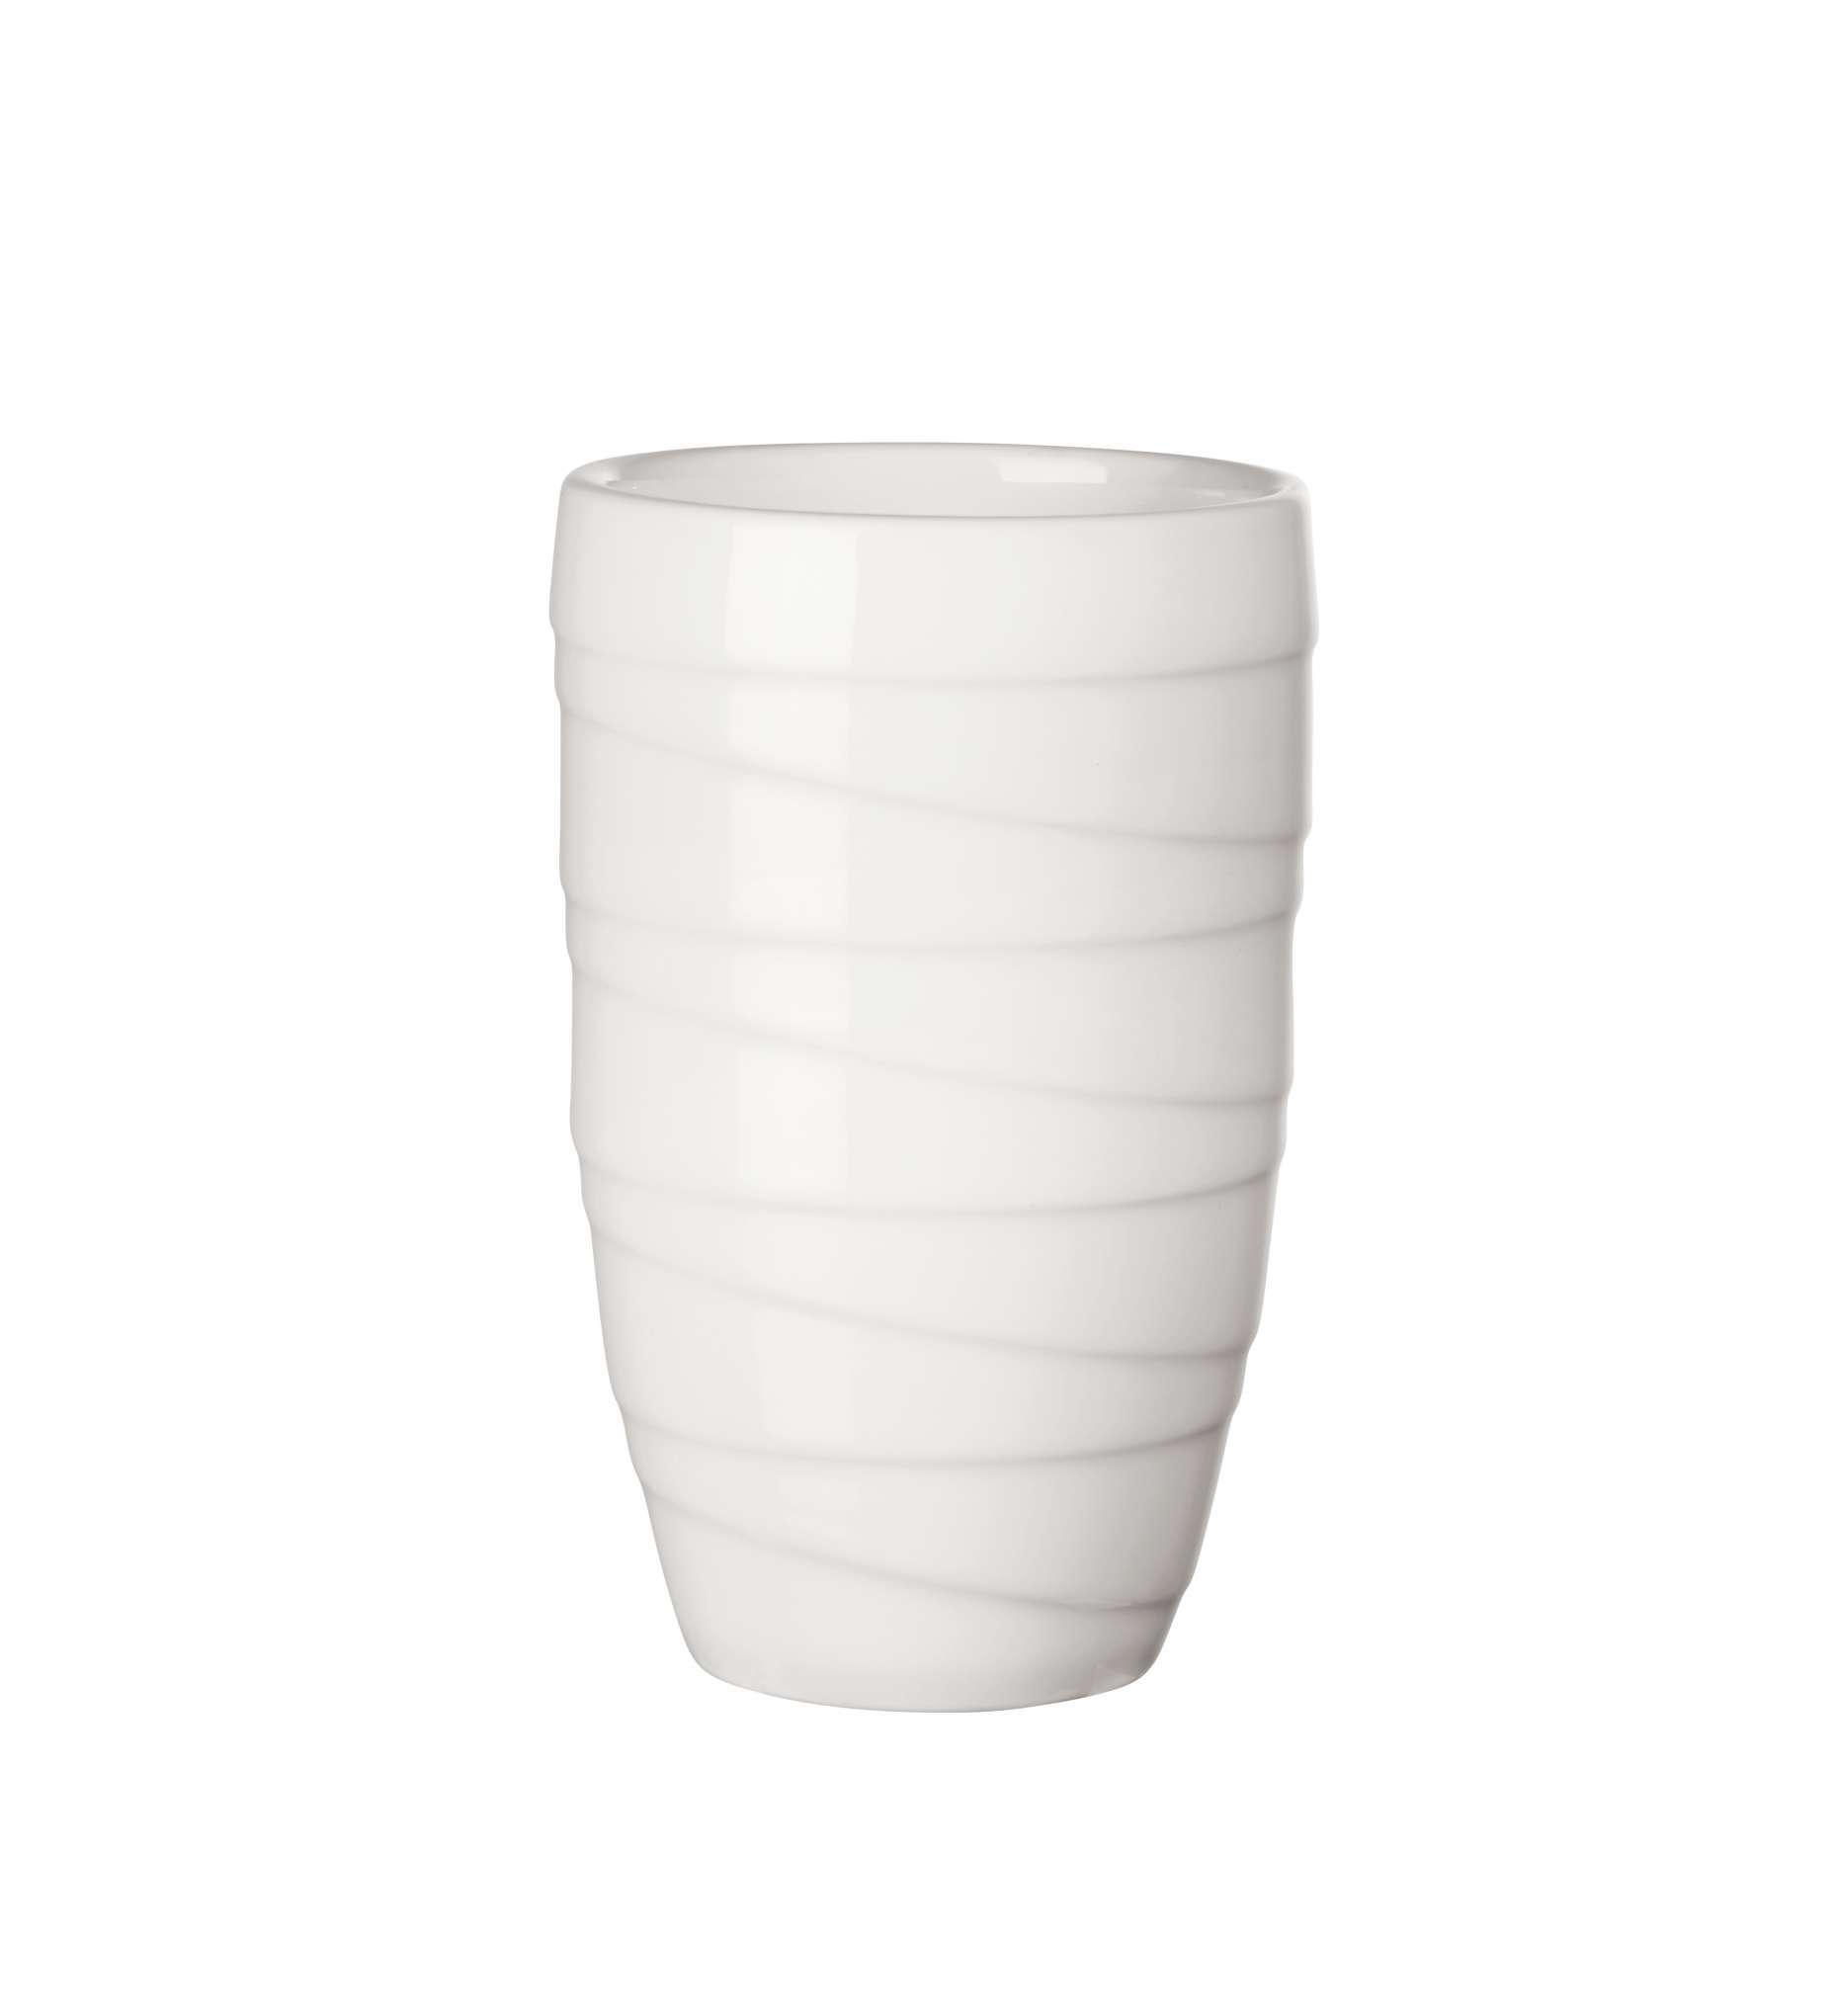 ŠÁLKA kostný porcelán (bone china)  - biela, Basics, keramika (8,7/12,3cm) - ASA